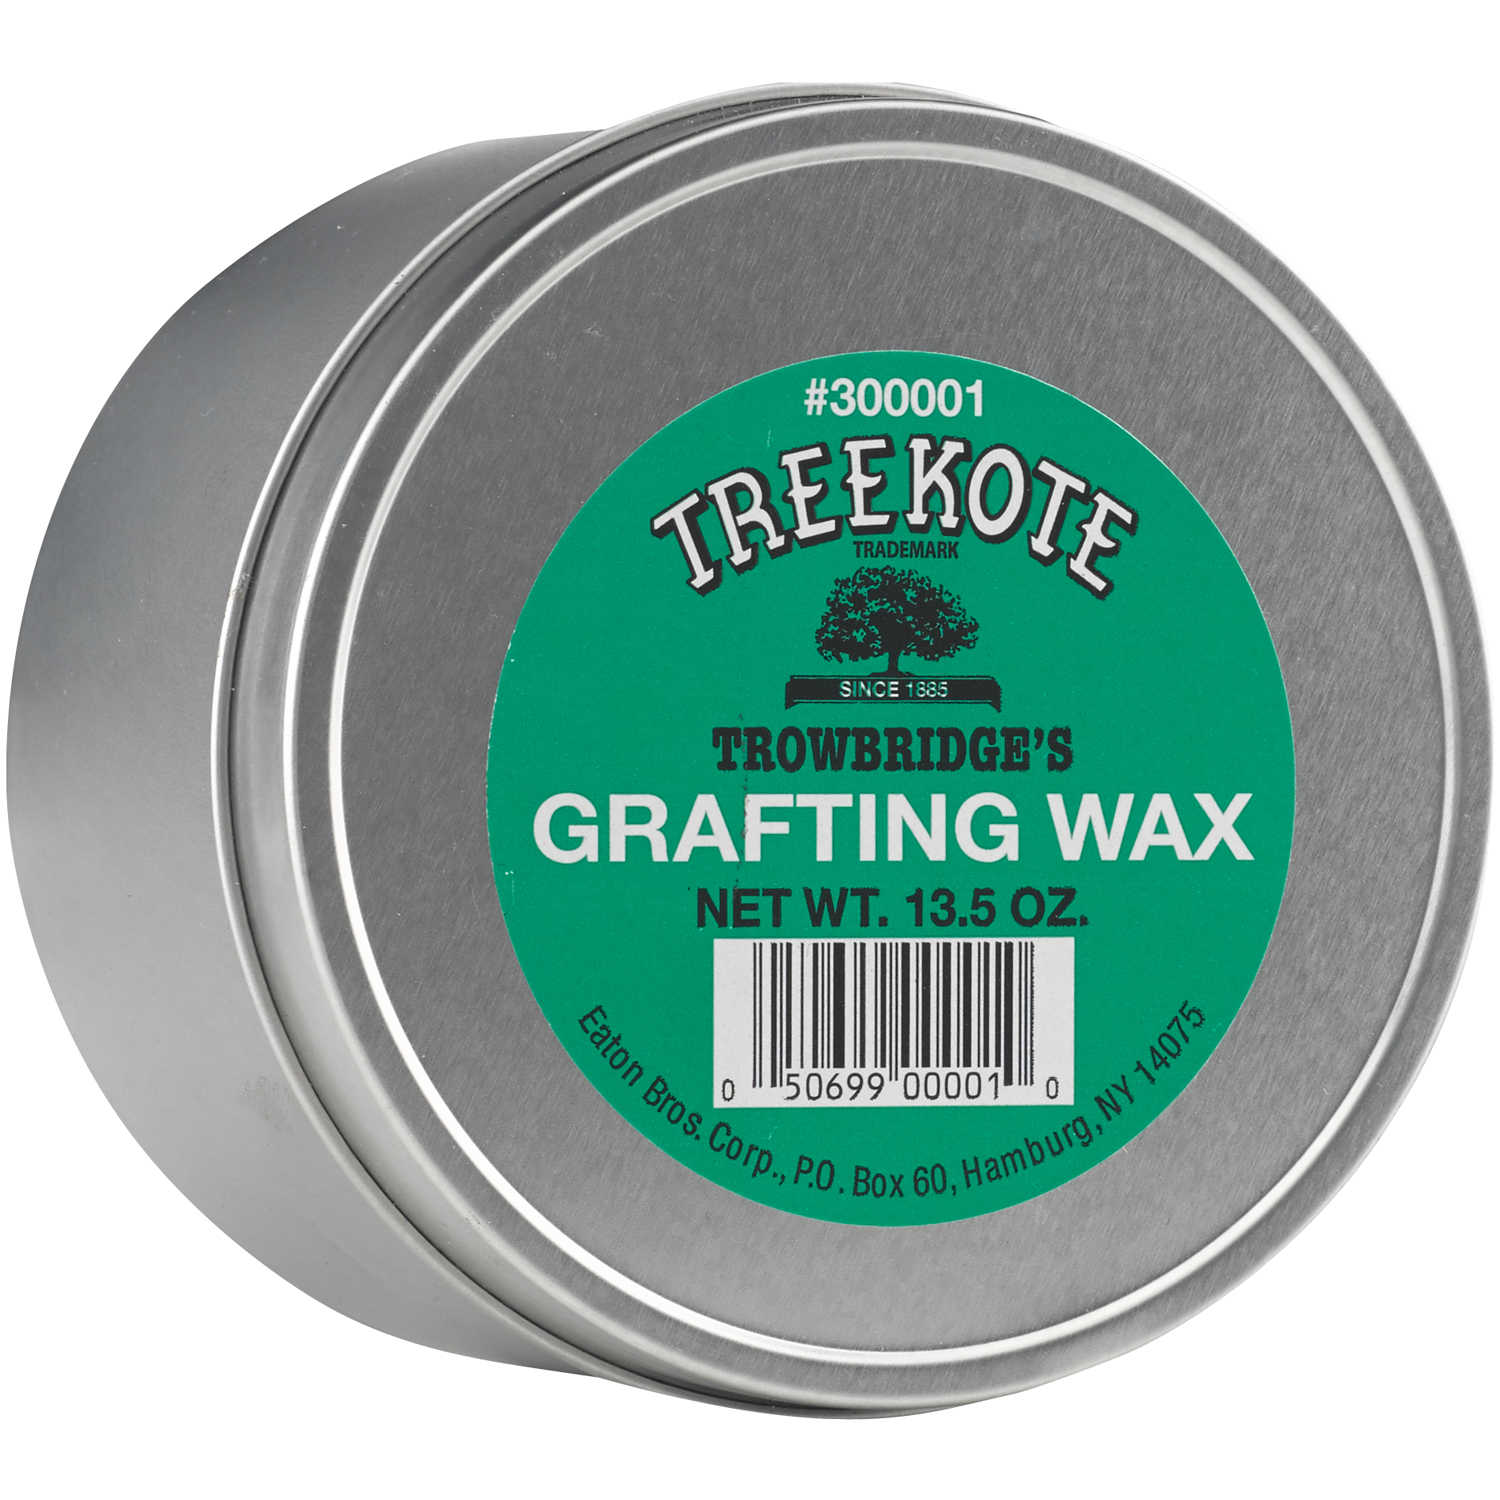 Treekote Grafting Wax - 16oz